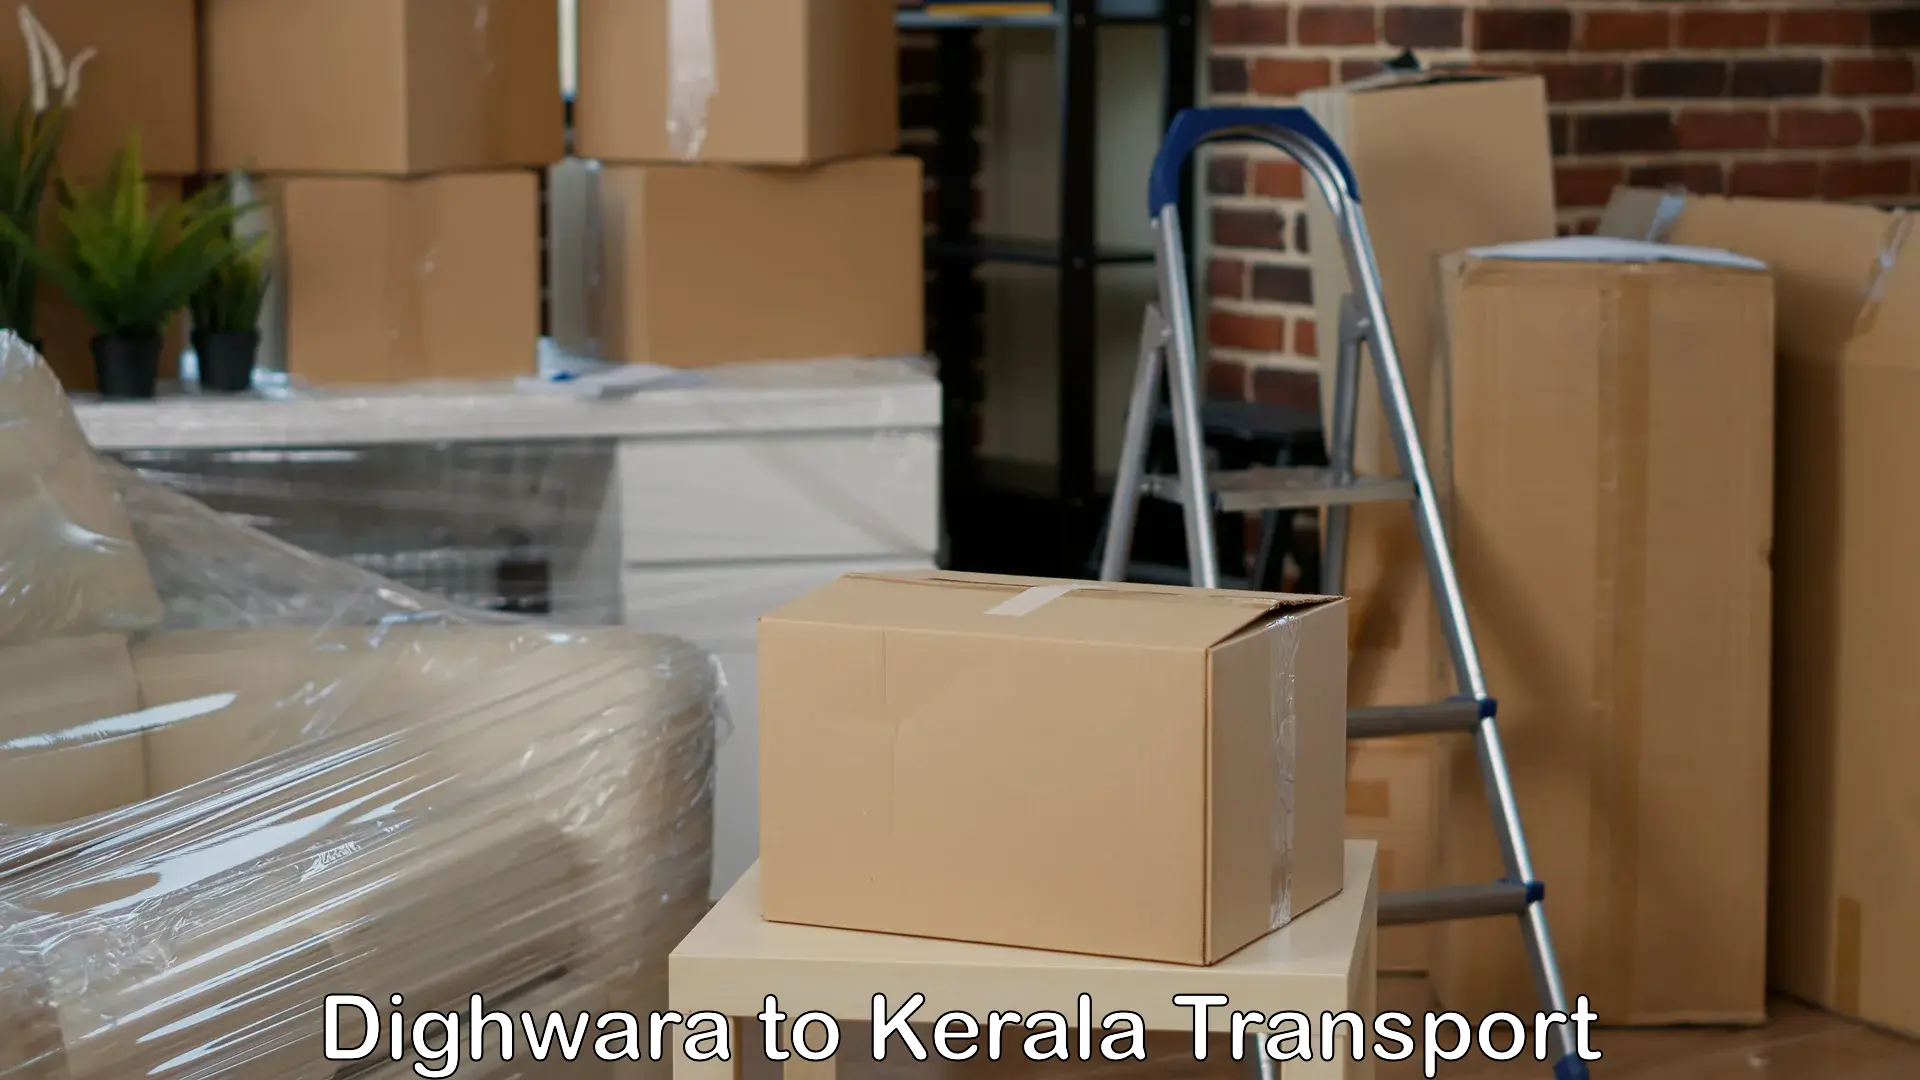 Pick up transport service Dighwara to Neyyattinkara